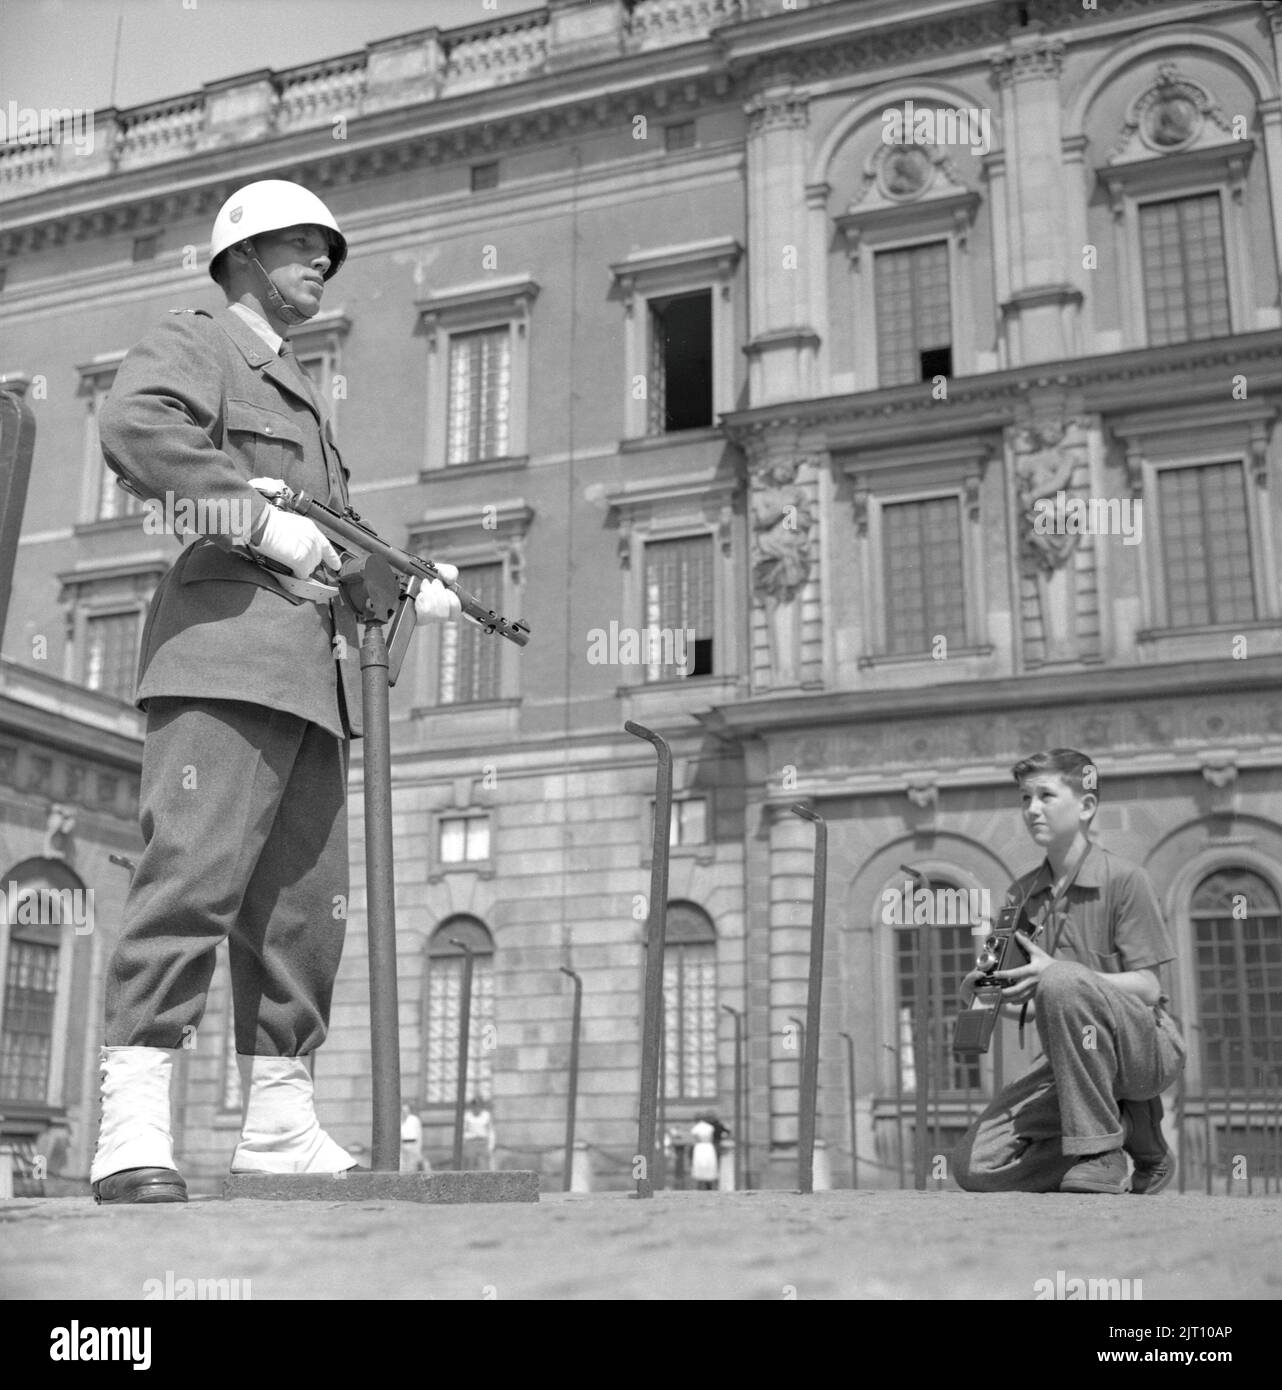 Fotograf im Jahr 1950s. Ein kleiner Junge mit seiner Kamera im Hof des königlichen Schlosses in Stockholm macht ein Bild des Burgwächters, der in Uniform und Waffe steht. Schweden 1951 Conard Ref. 2443 Stockfoto